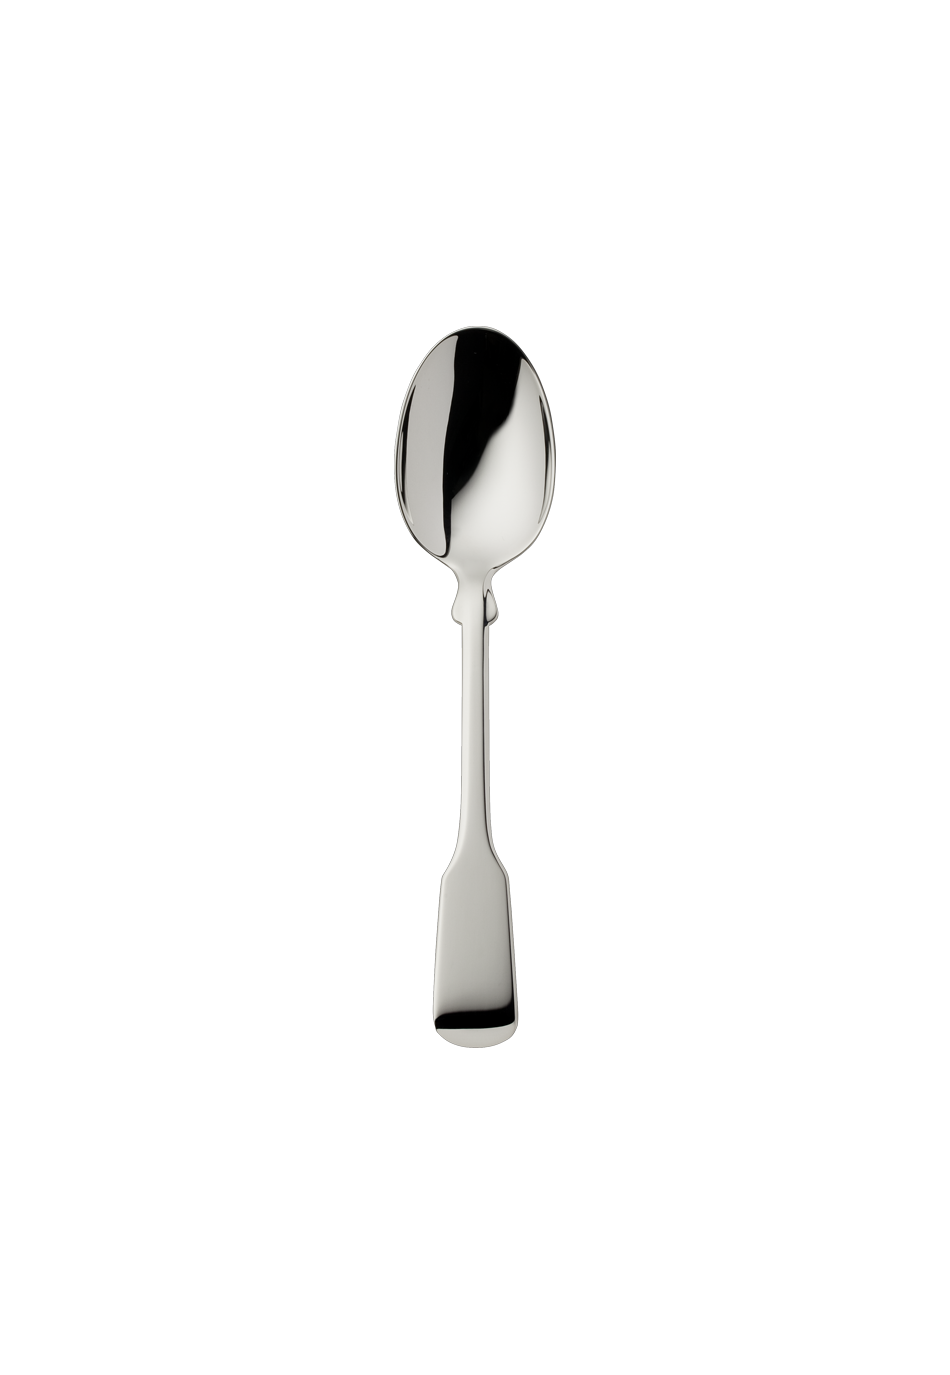 Alt-Spaten Children's Spoon (150g massive silverplated)